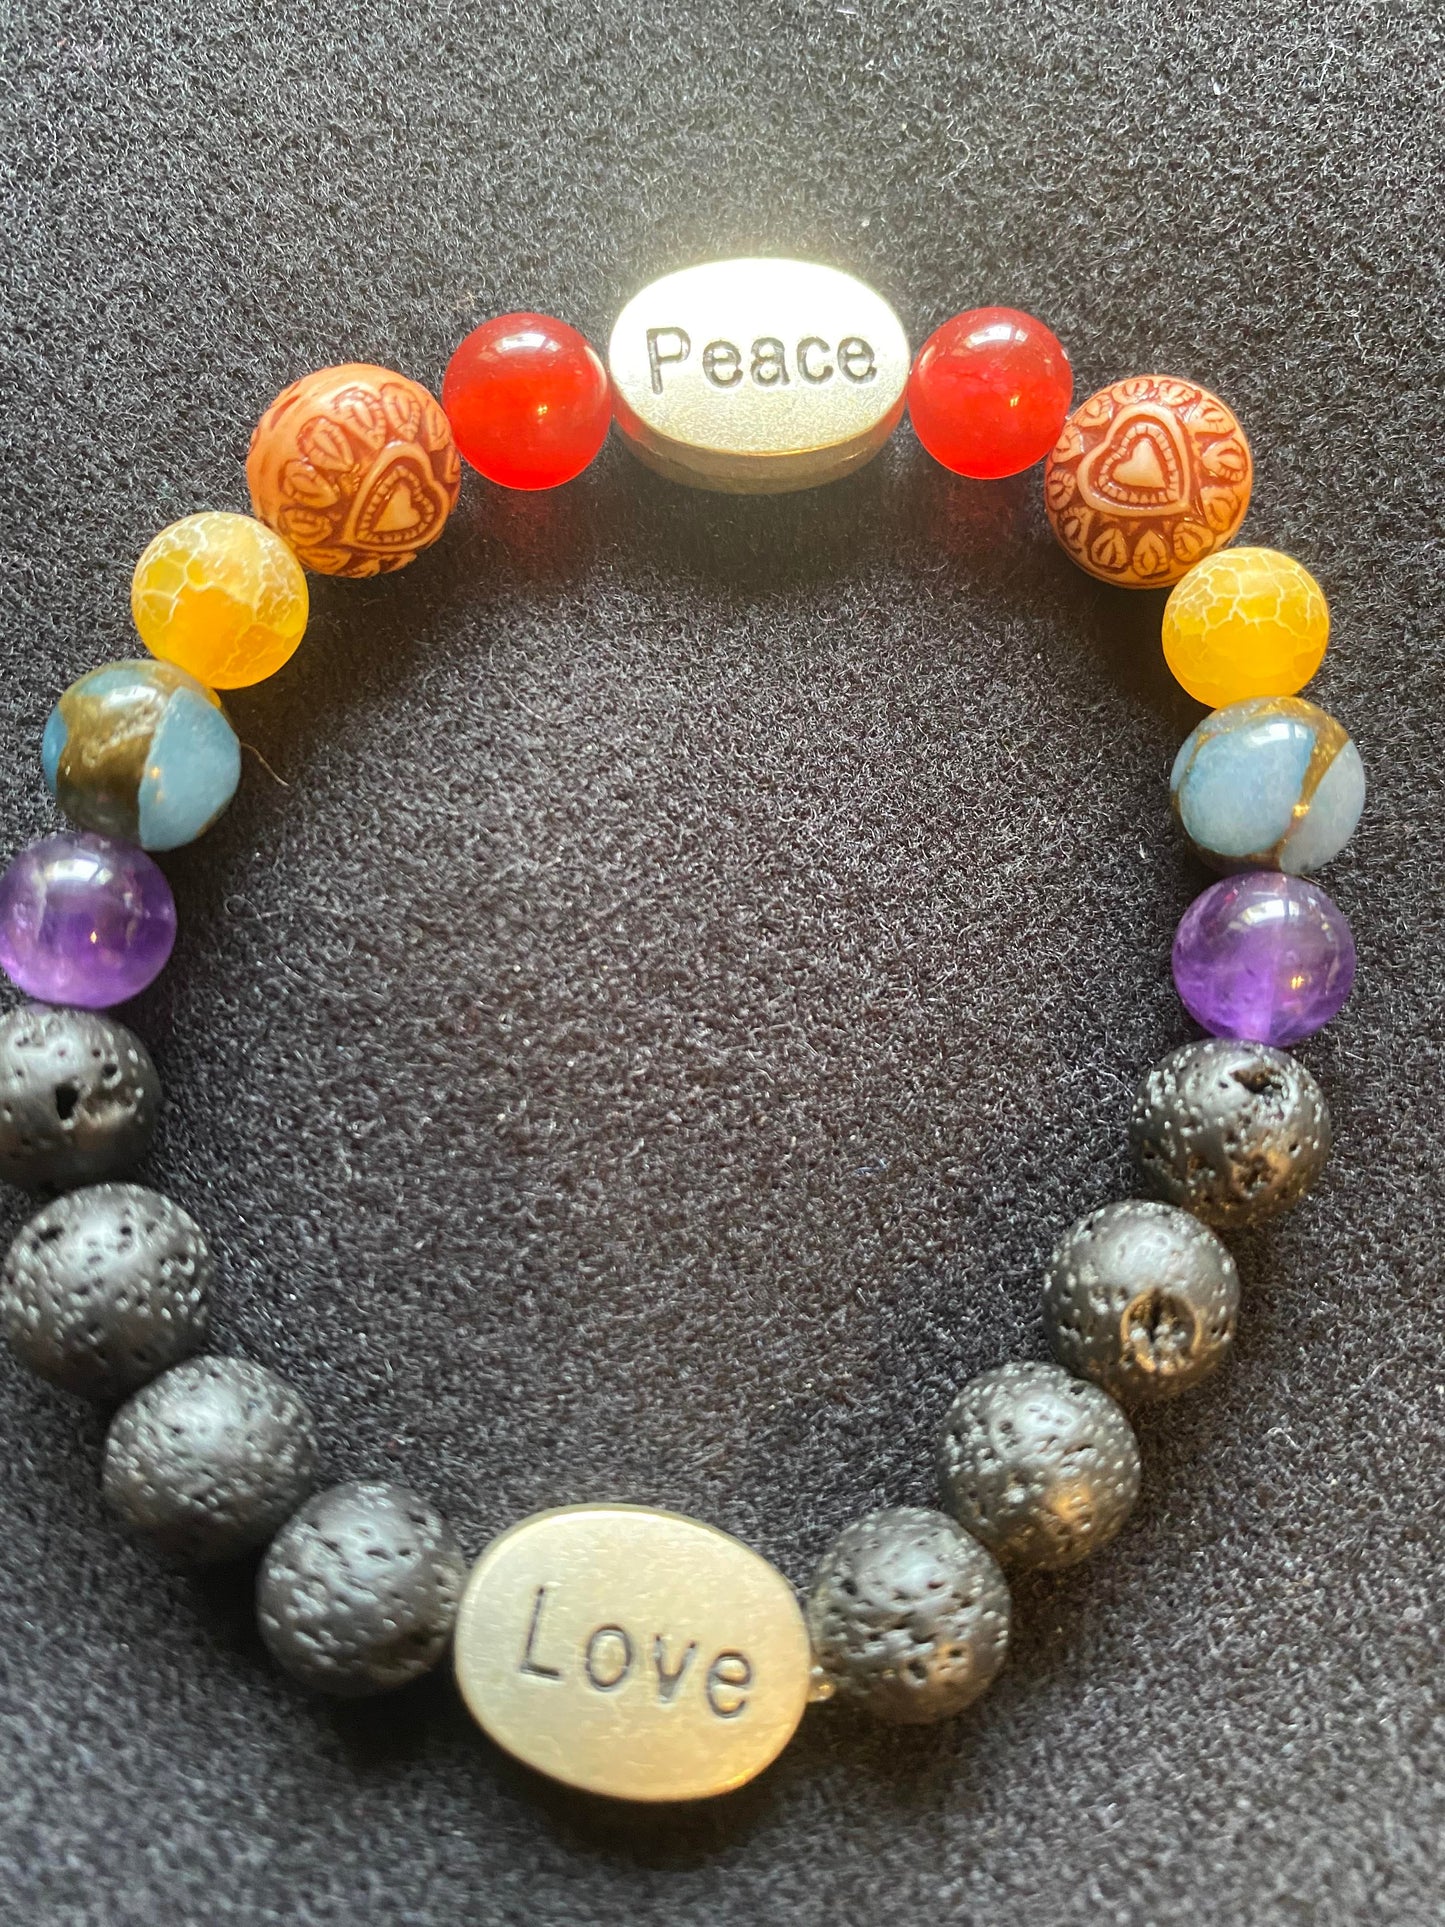 Bracelet - Love & Peace